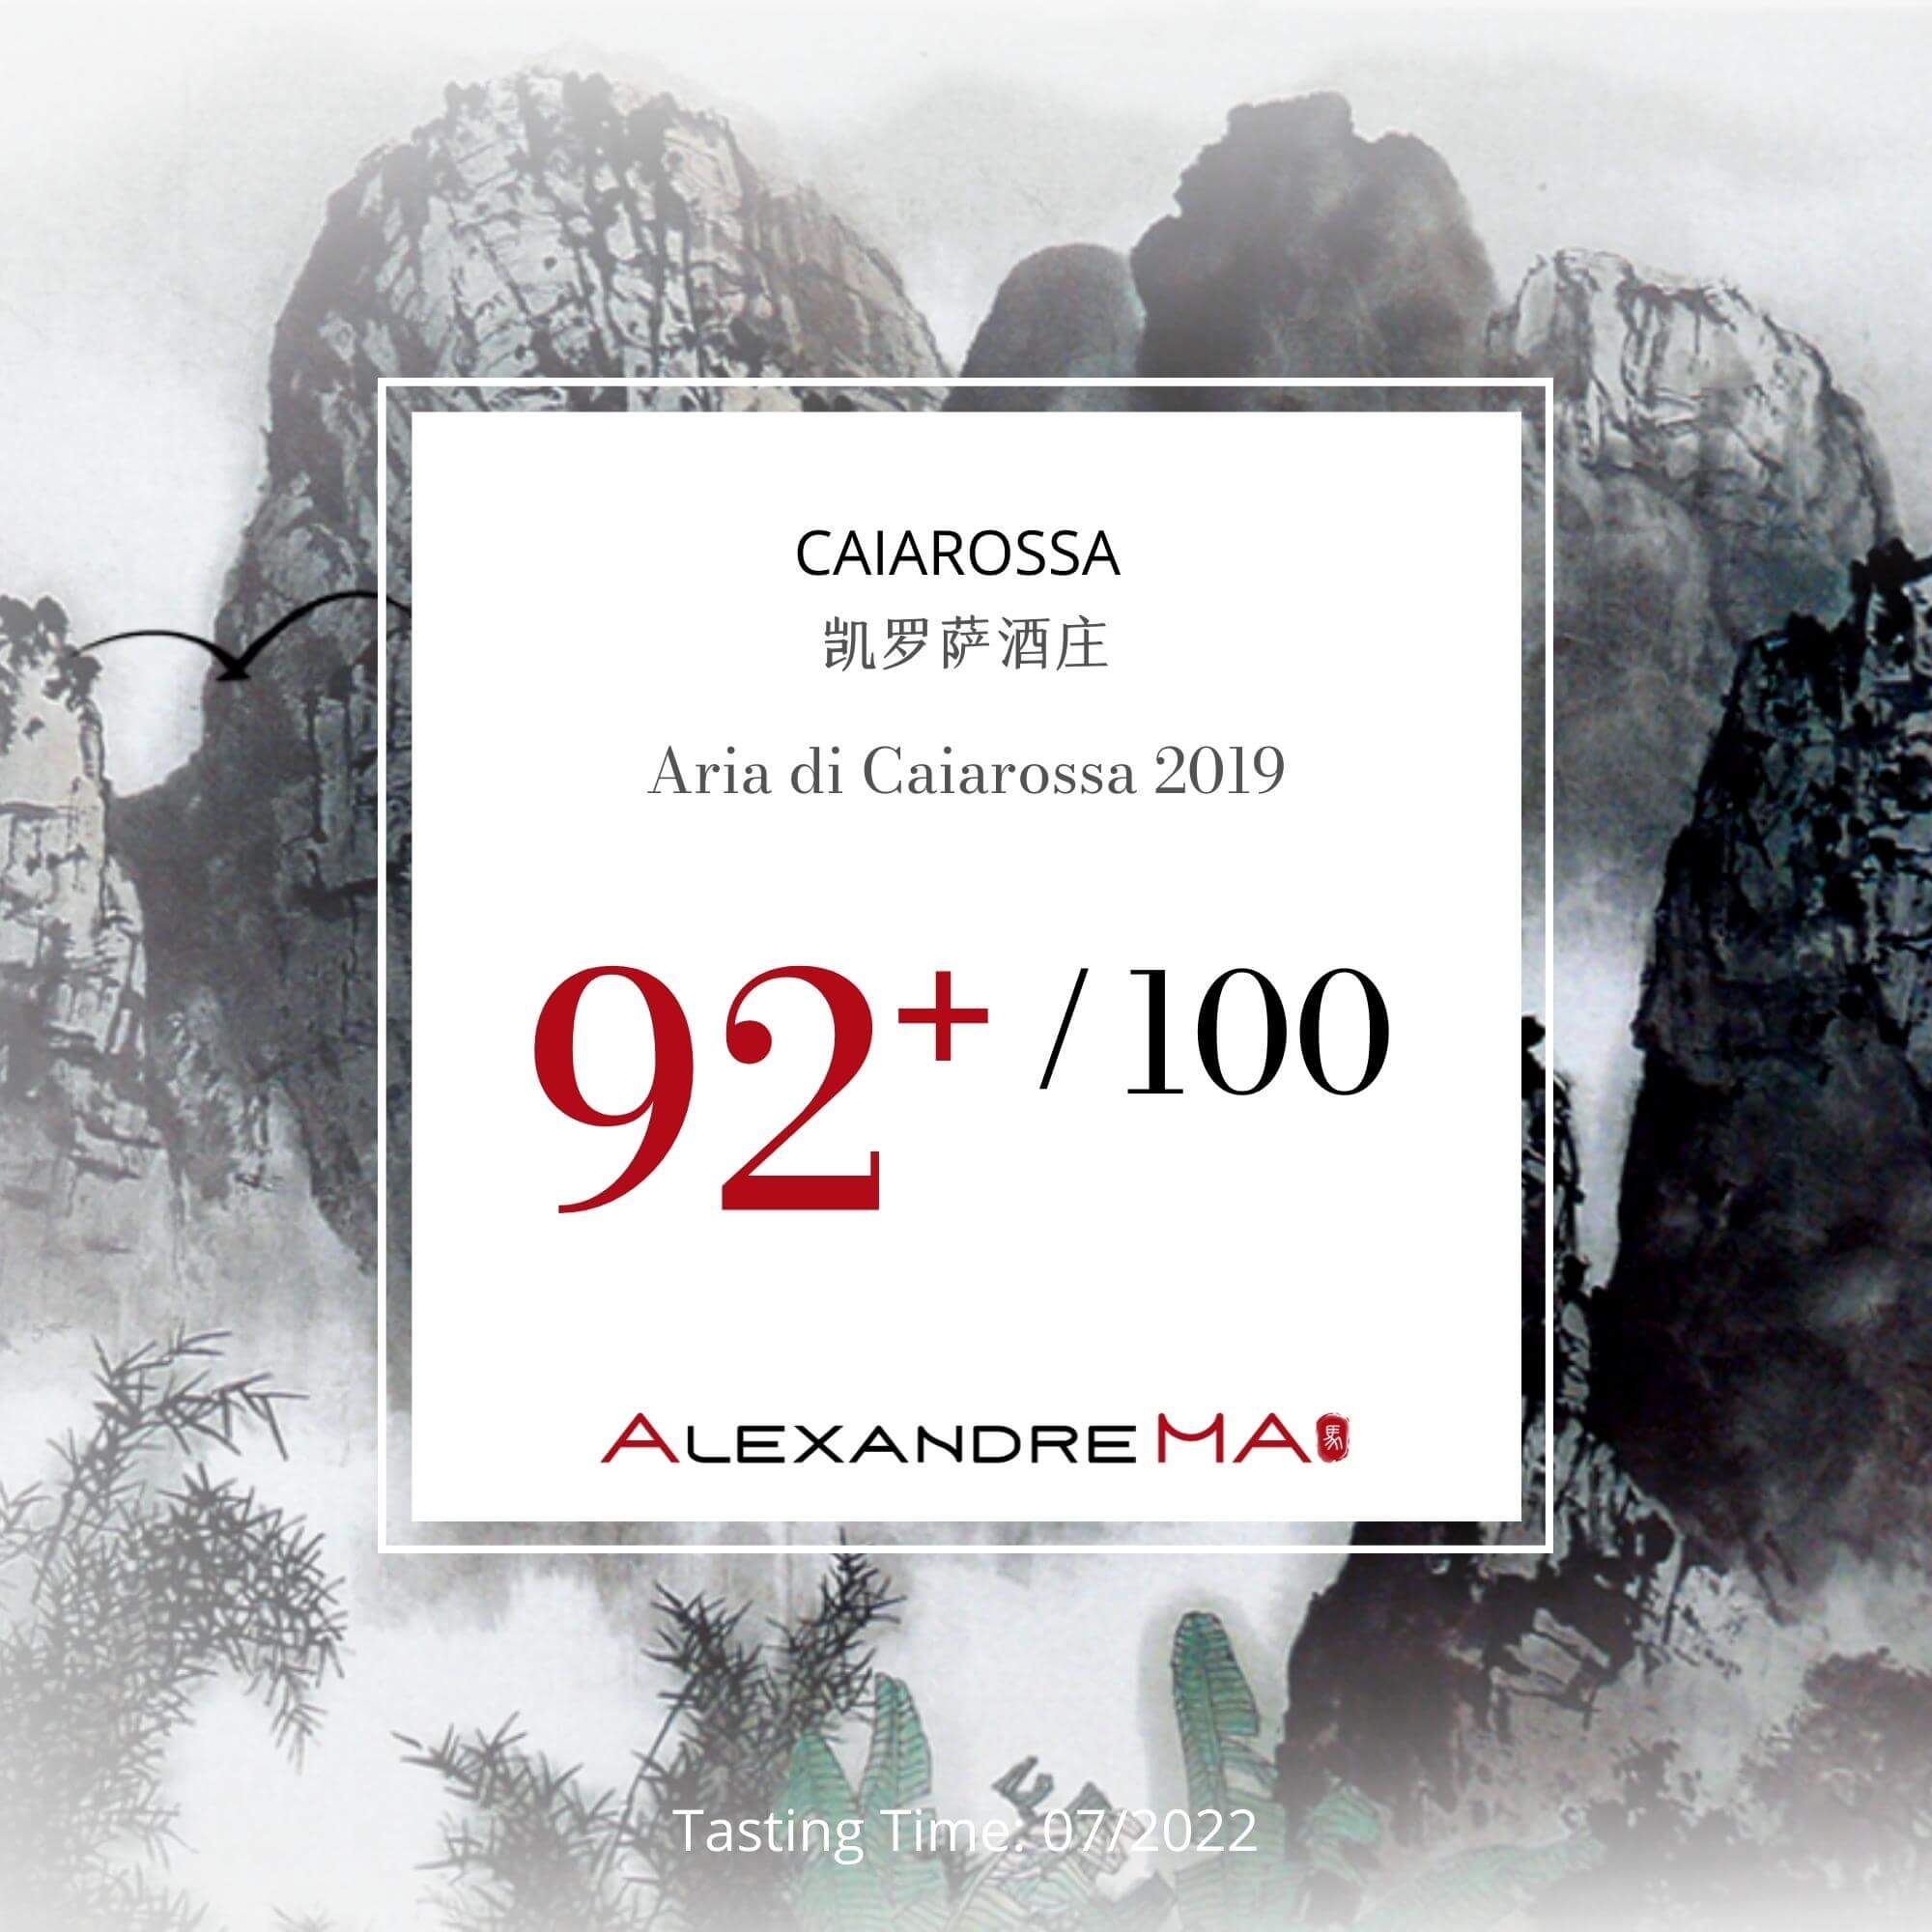 Caiarossa Aria di Caiarossa 2019 - Alexandre MA